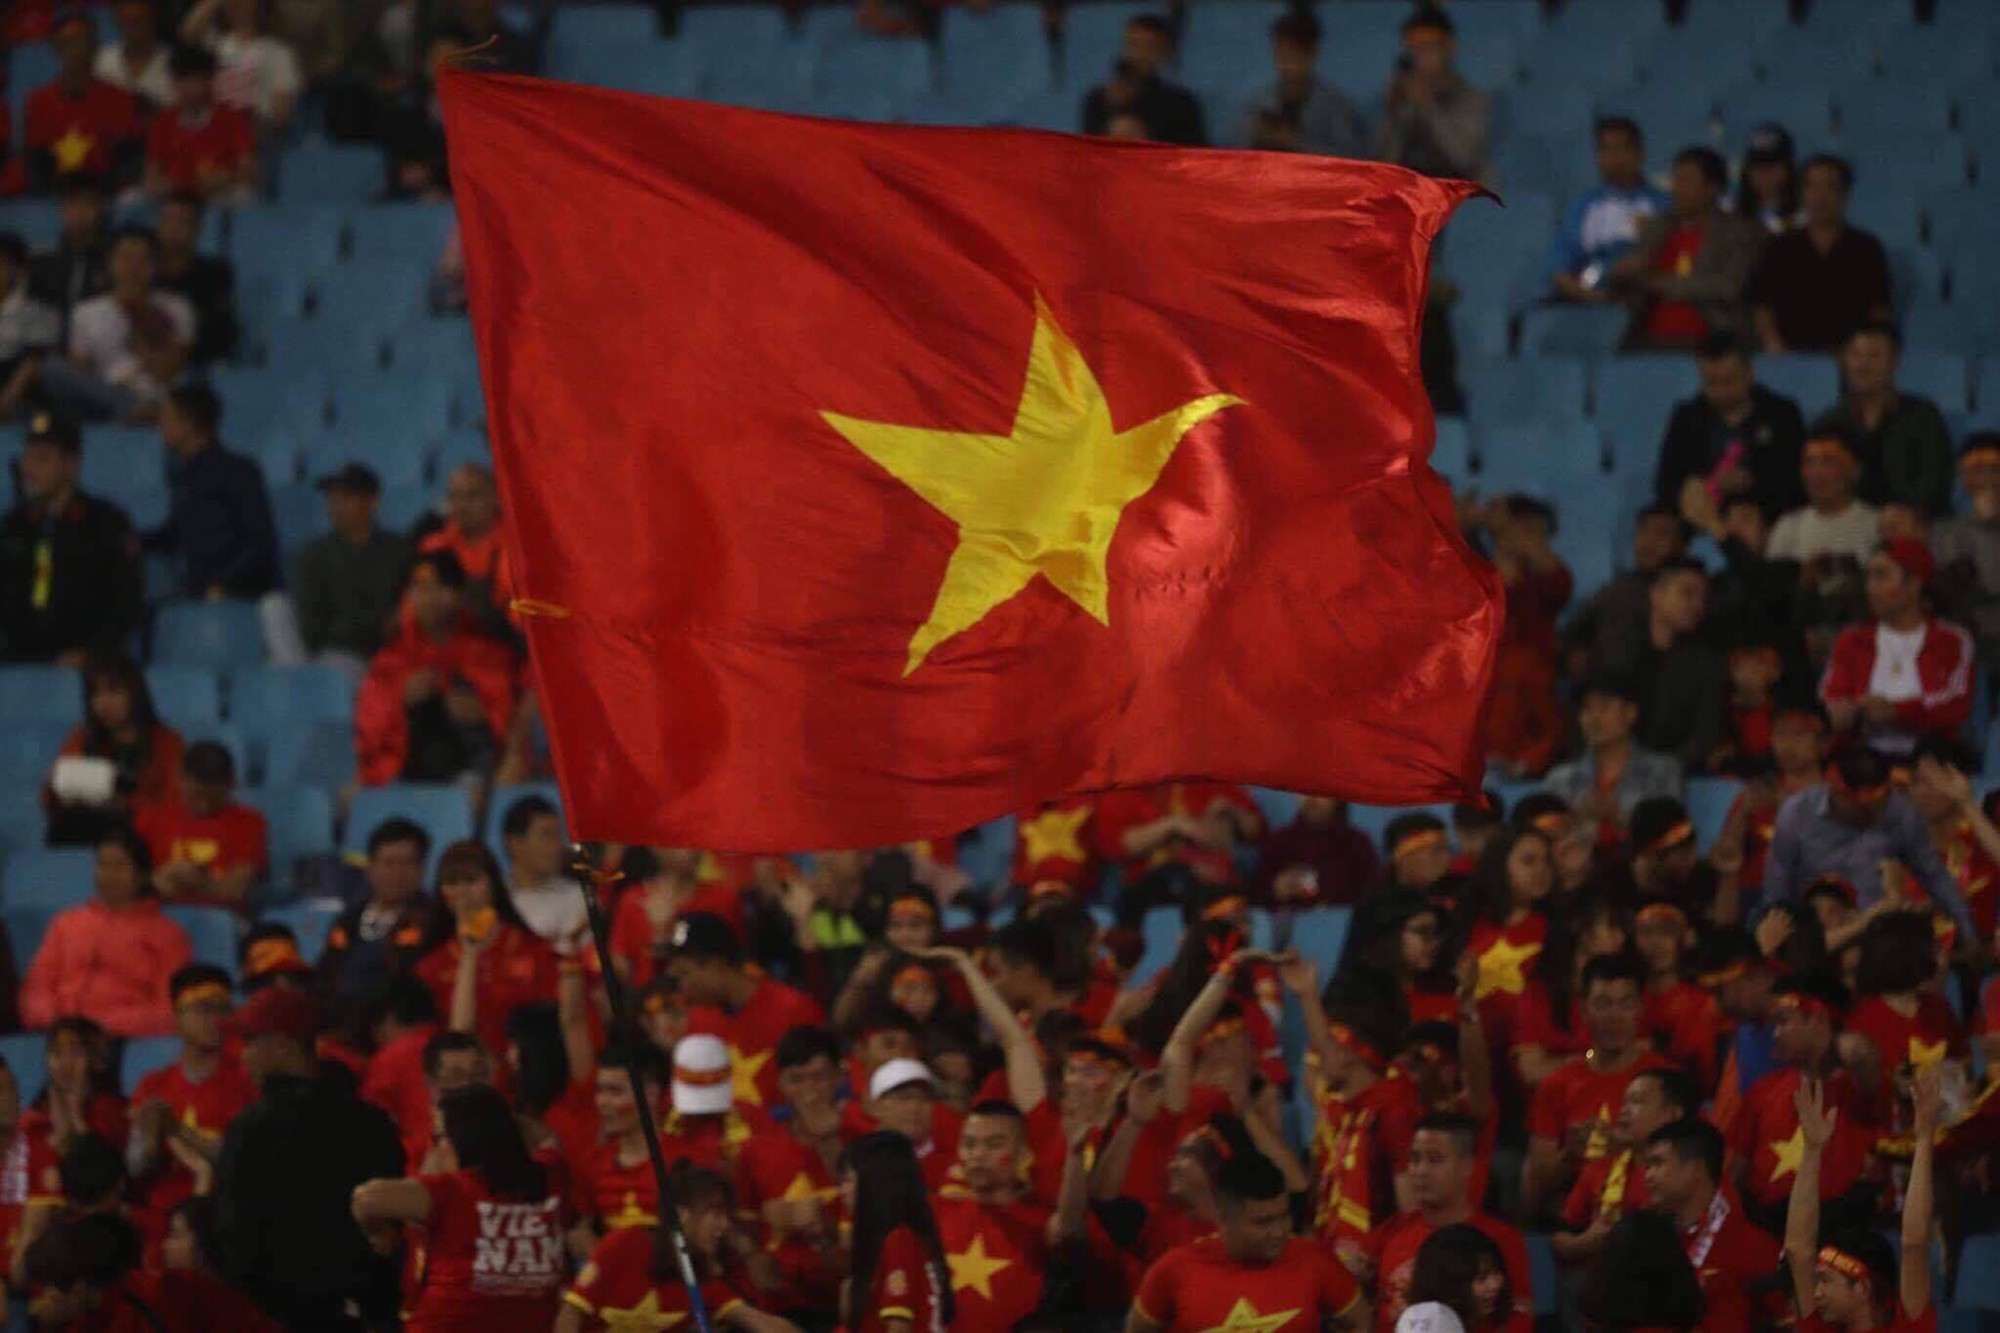 Đội tuyển bóng đá Việt Nam: Đội tuyển bóng đá Việt Nam đang hướng tới những thành công mới. Với tình thần thể thao cao cả, sự cống hiến và tinh thần đoàn kết, chúng ta đã và đang chinh phục được nhiều giải đấu, từ khu vực đến quốc tế. Hãy cùng ngắm nhìn những khoảnh khắc đầy cảm xúc của đội tuyển Việt Nam trong các trận đấu đỉnh cao!